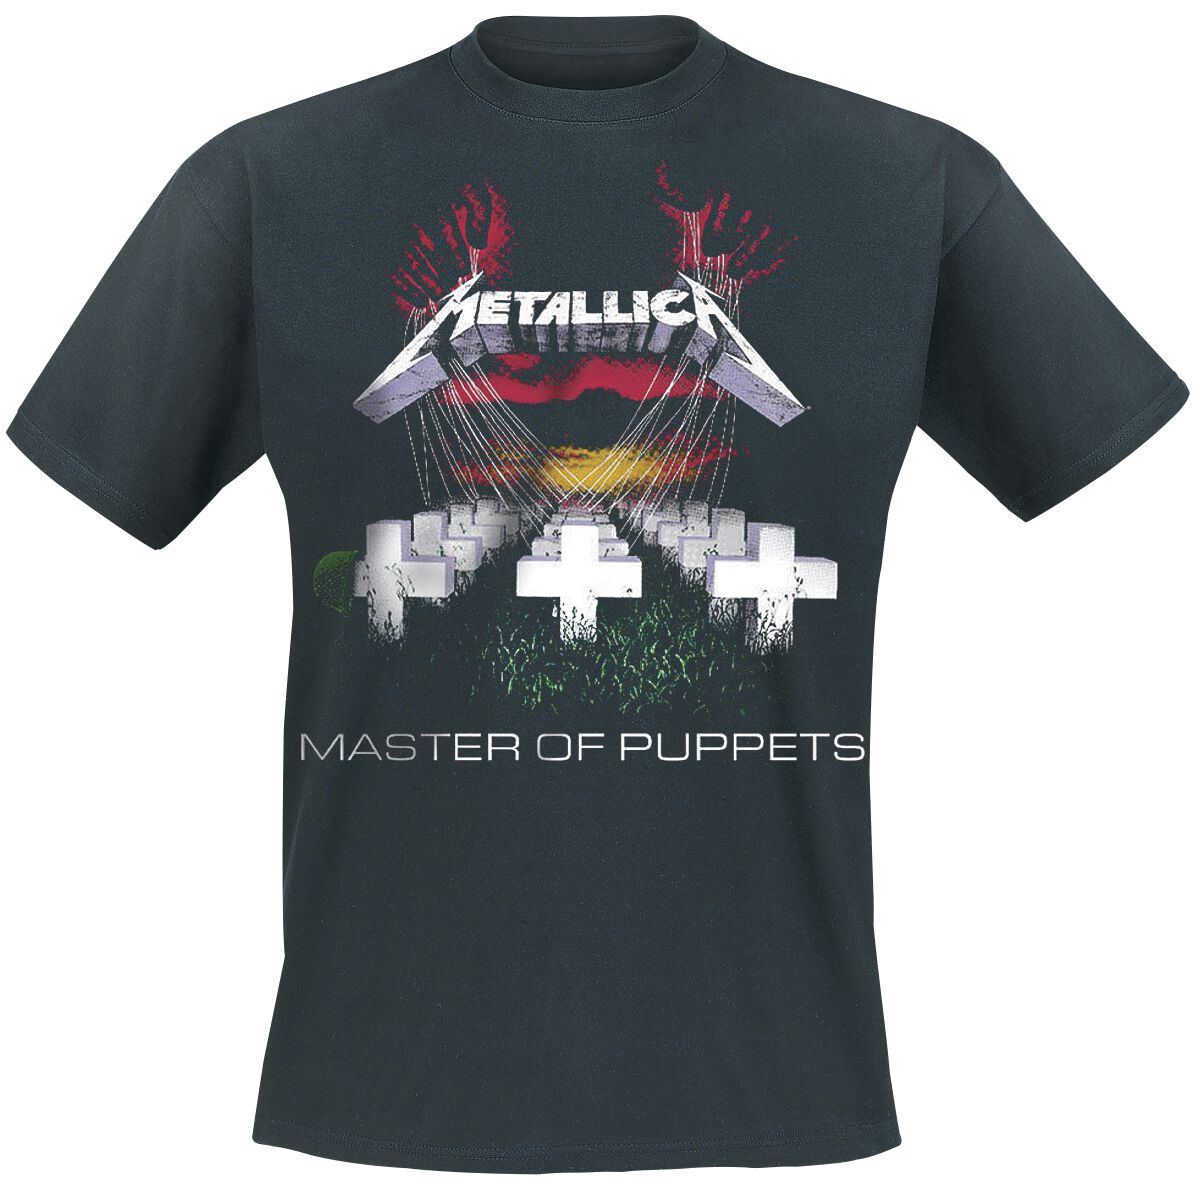 Metallica T-Shirt - Master Of Puppets - S bis 5XL - für Männer - Größe L - schwarz  - Lizenziertes Merchandise!